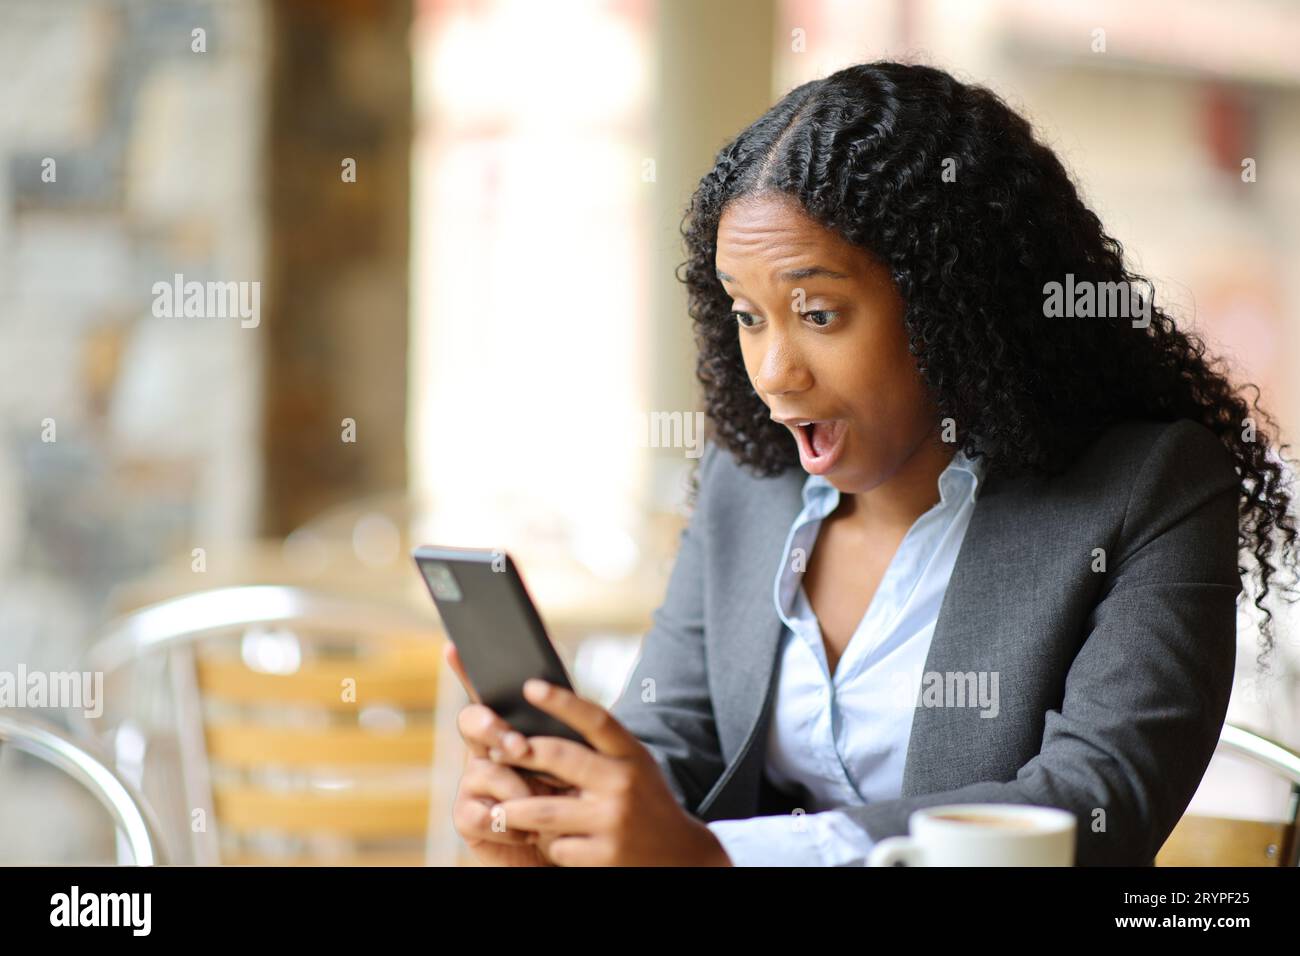 Impresionante ejecutivo negro comprobando teléfono inteligente en una terraza del bar Foto de stock